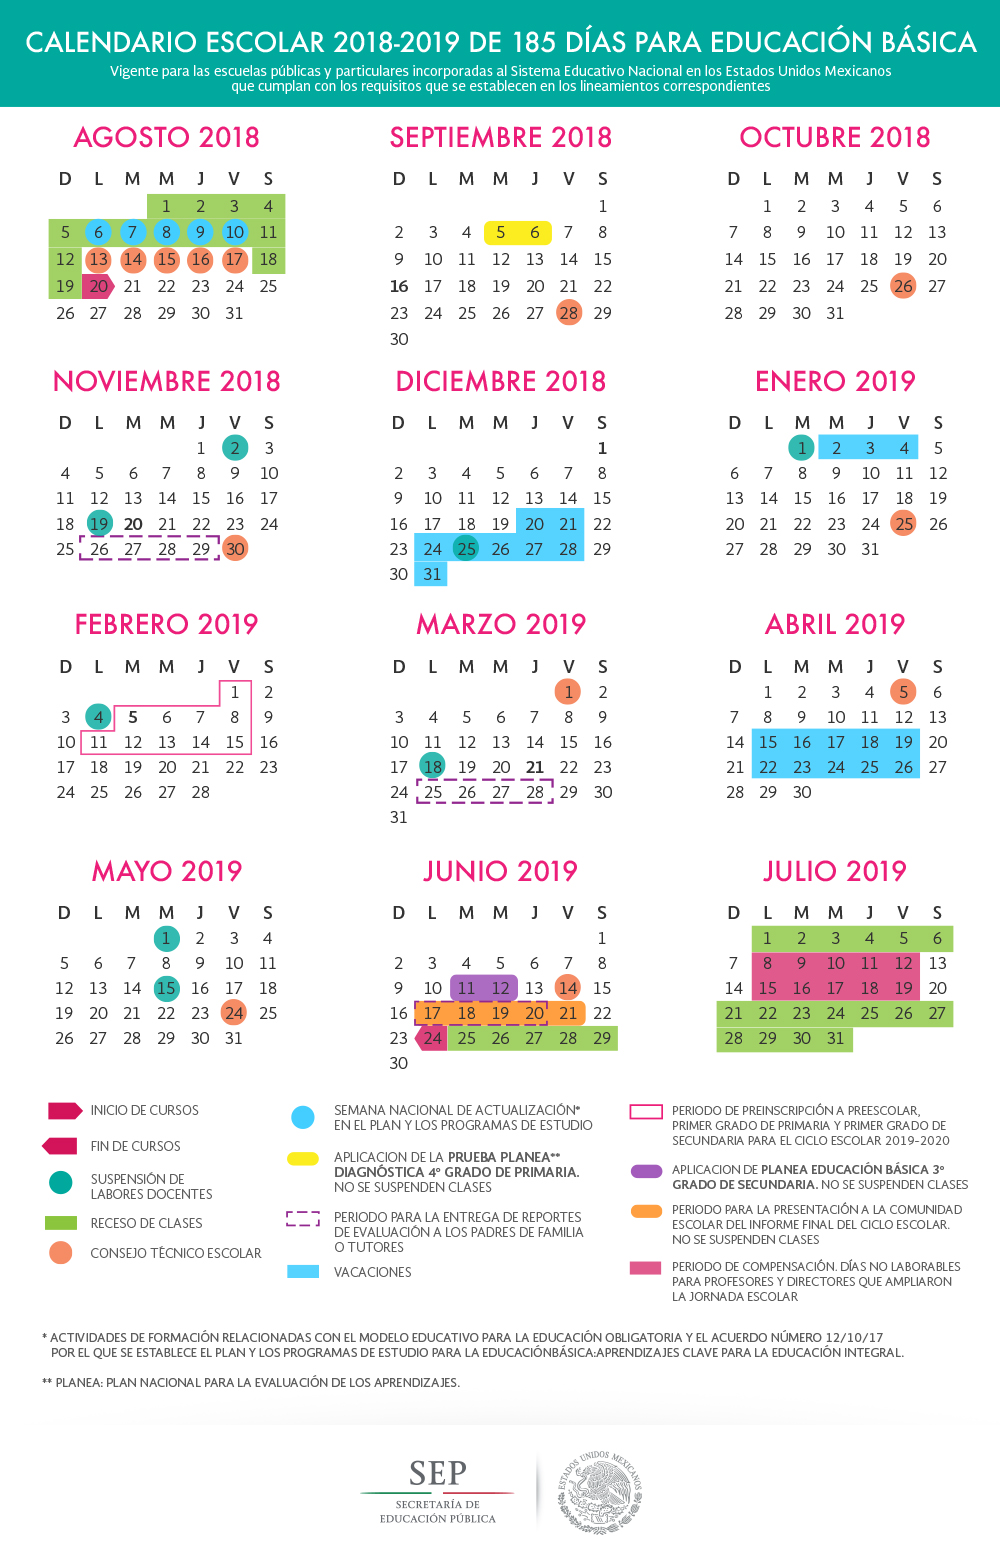 Calendario de 185 días para educación básica